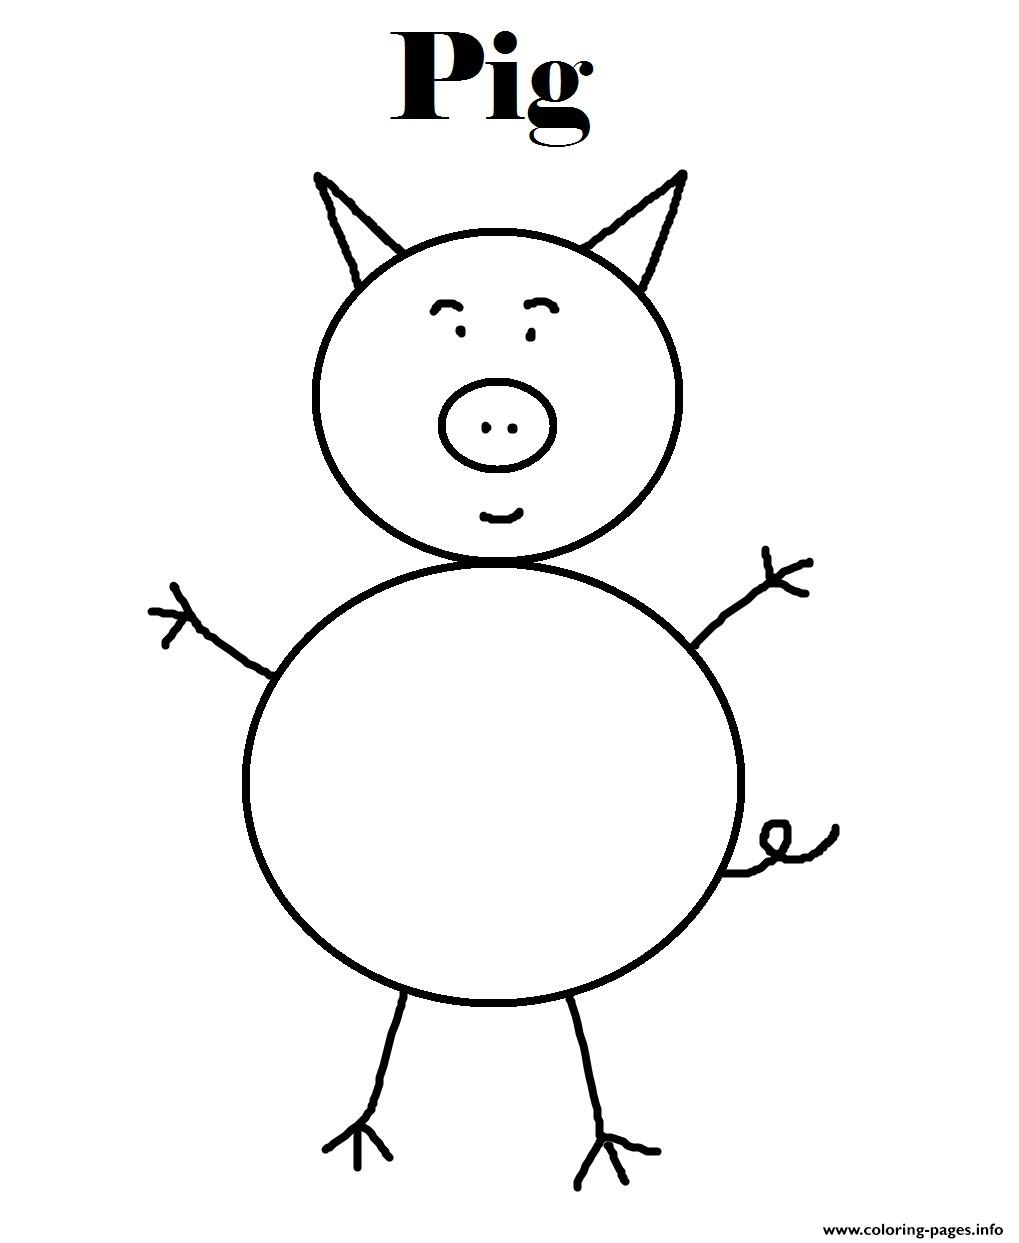 Pig S Kids Printable2ea1 coloring